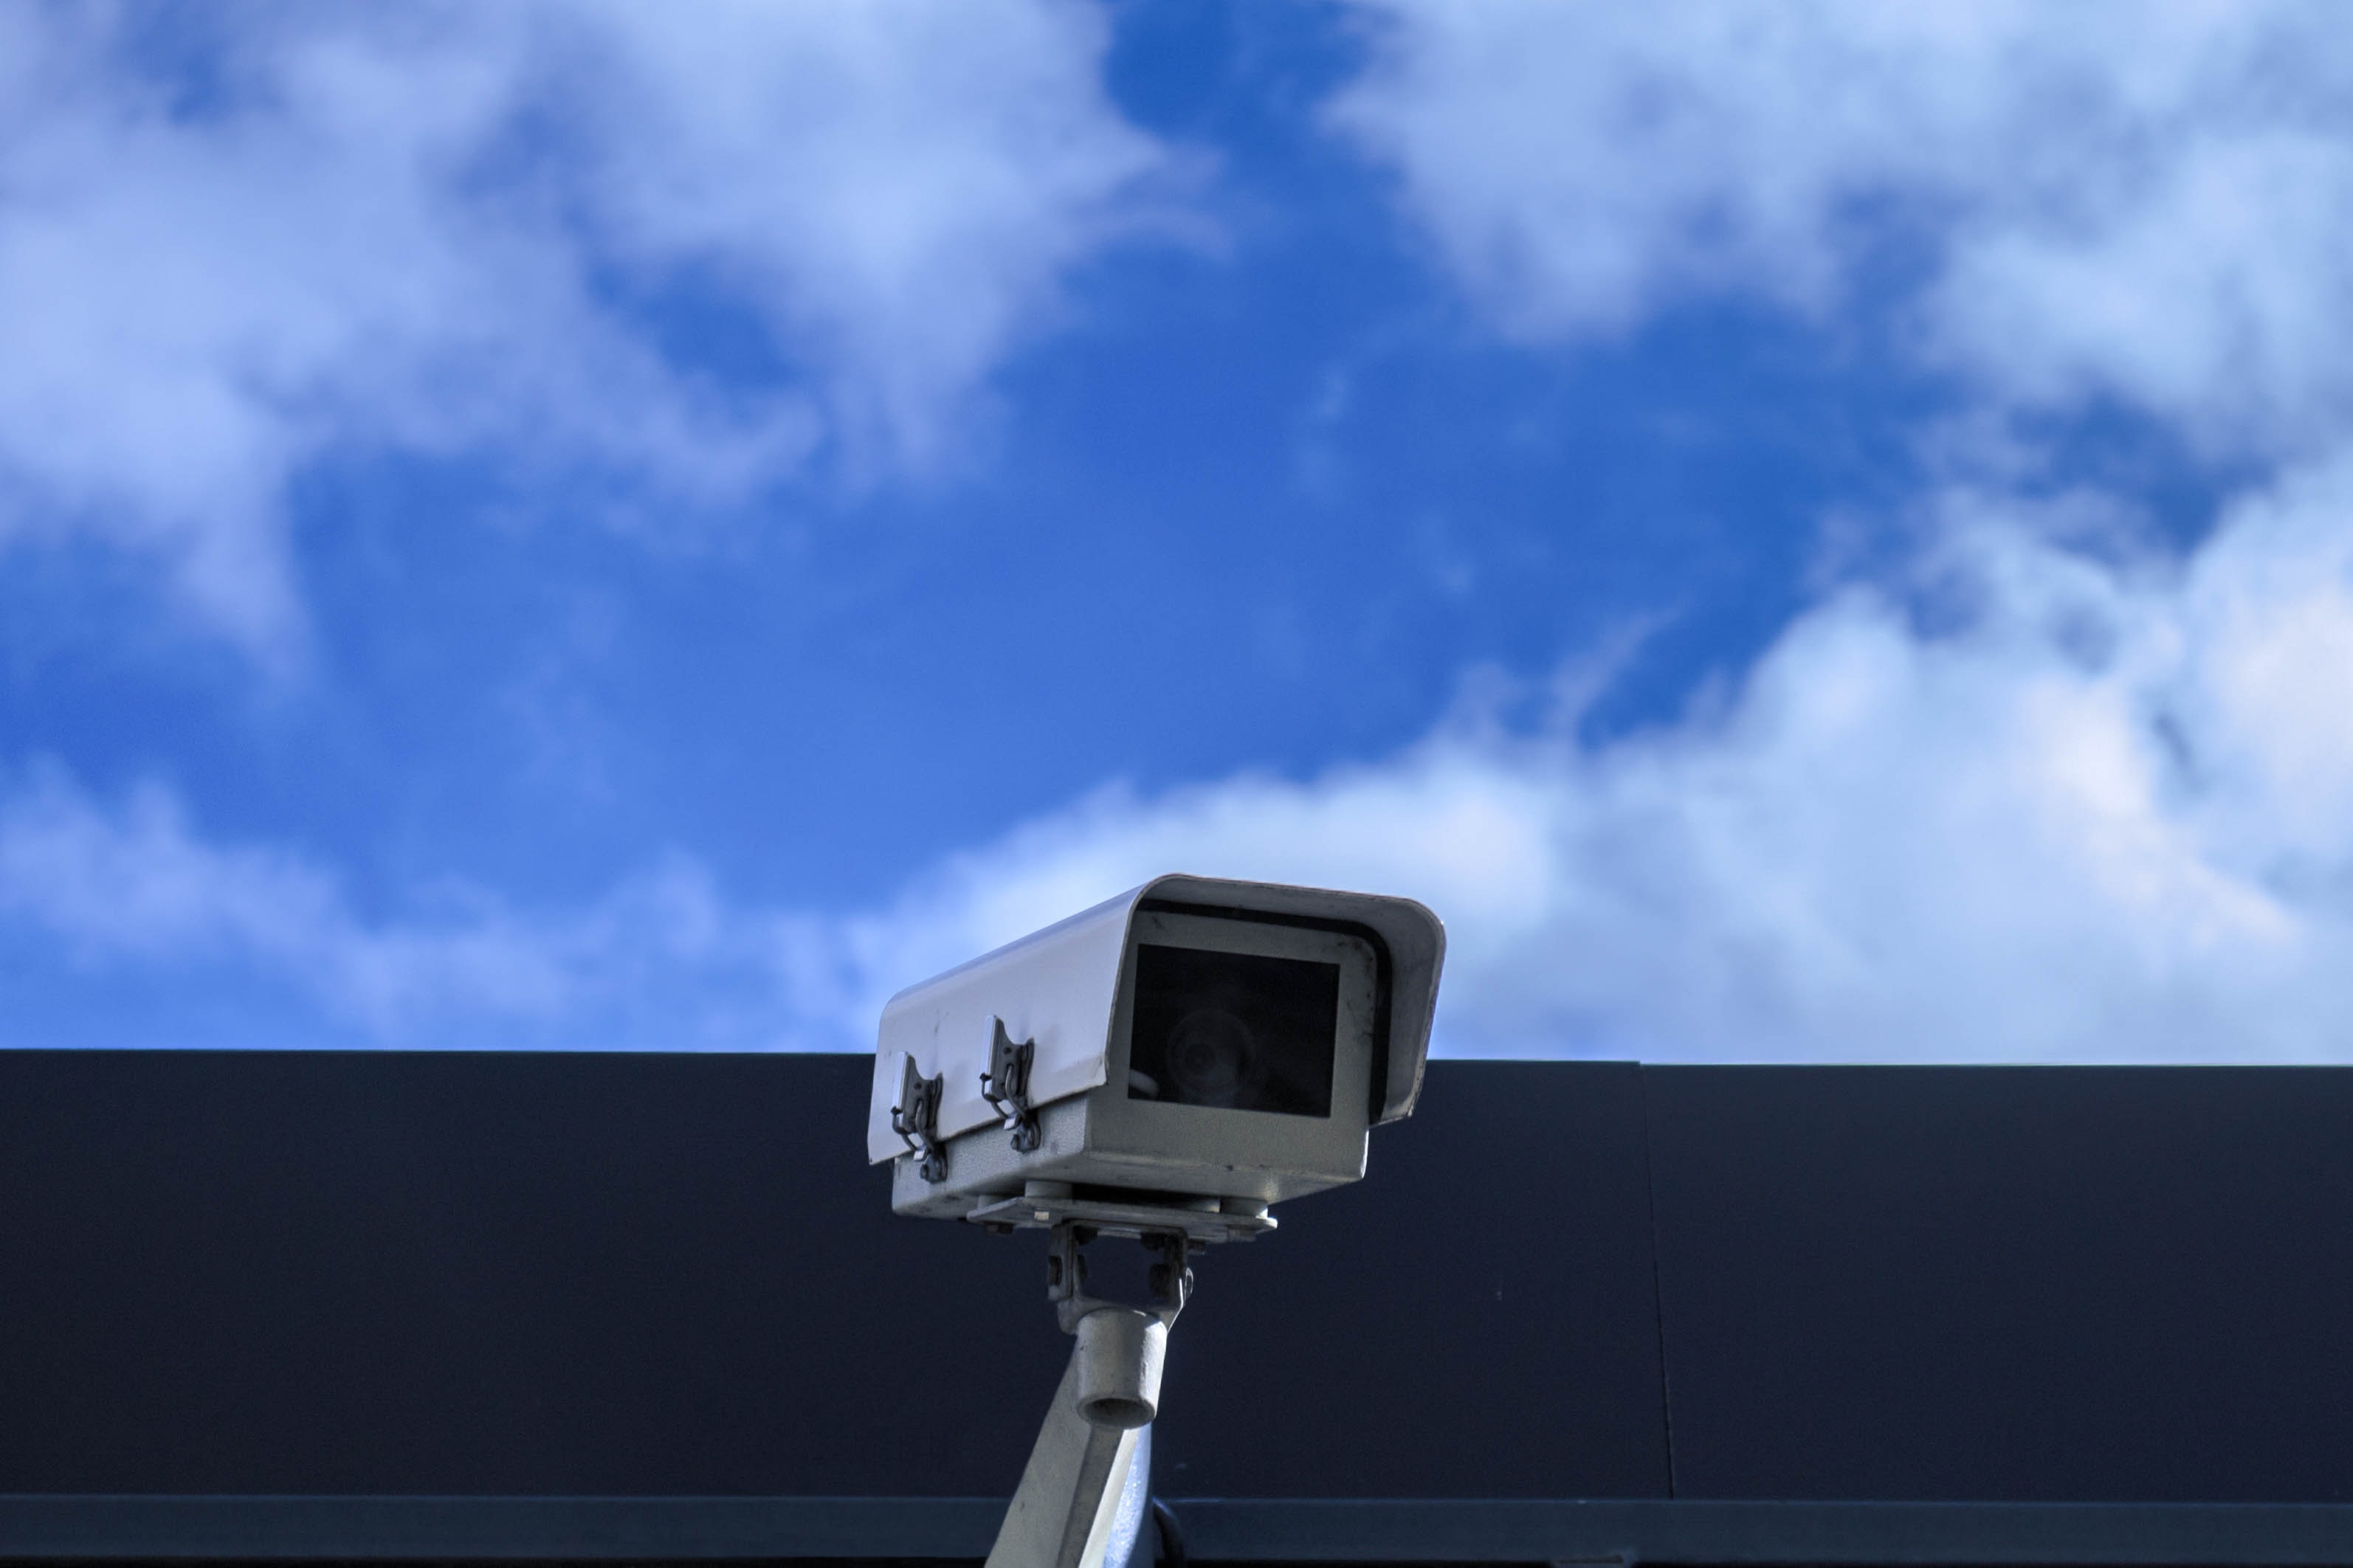 IMY har tagit emot ett klagomål som gör gällande att Kungälvs kommun bedriver kamerabevakning utan att ha sökt och fått tillstånd från IMY